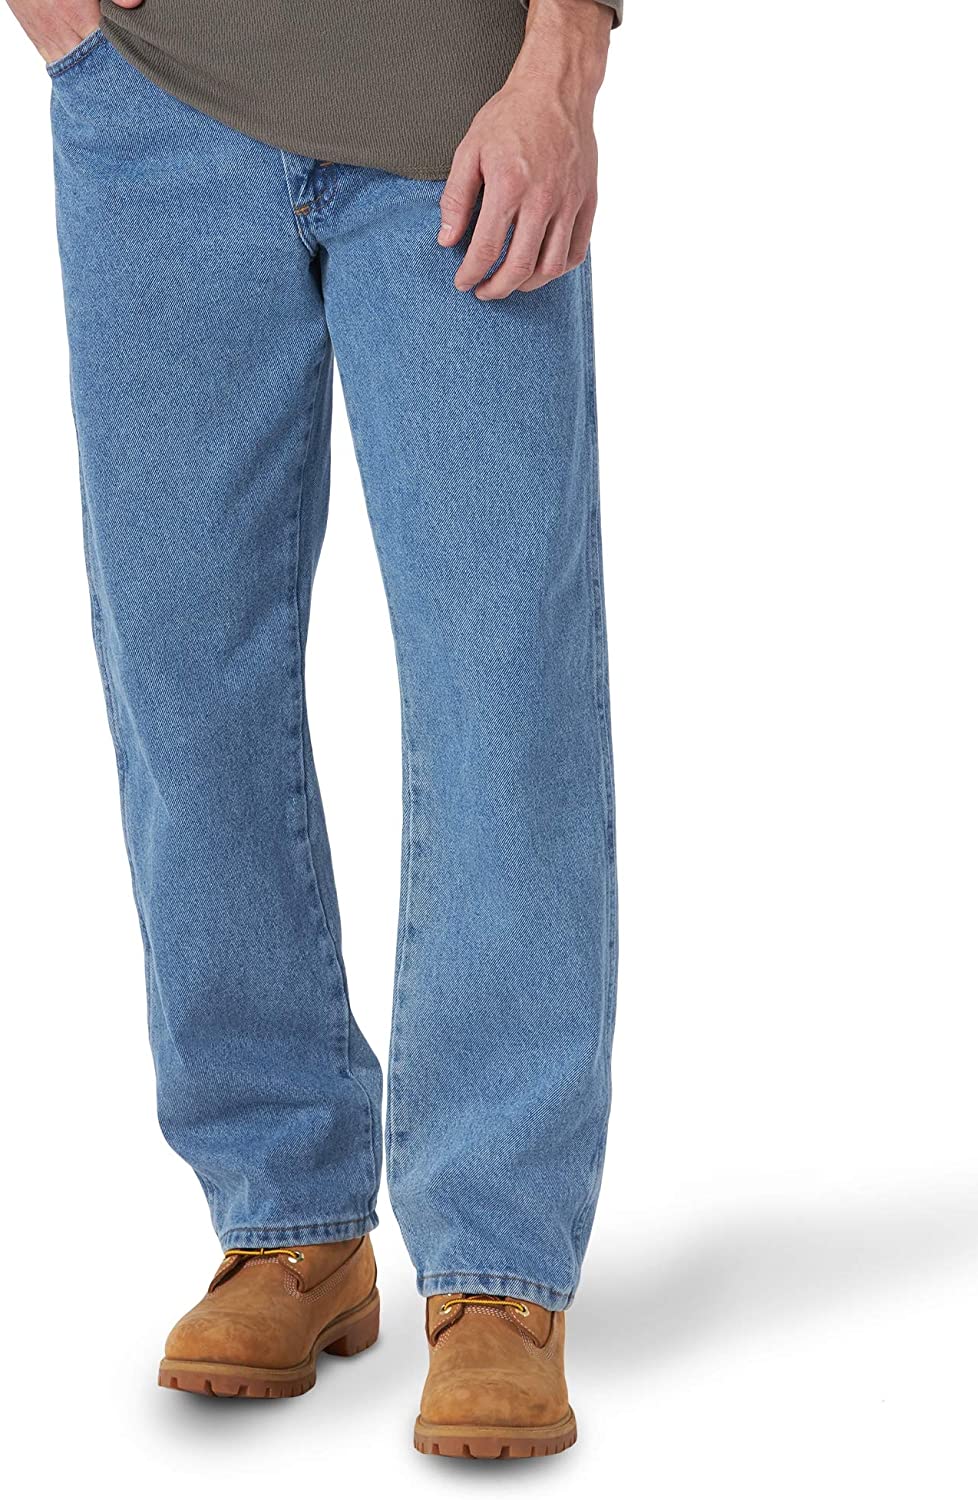 Rustler By Wrangler Men's Big & Tall Regular Fit Straight Leg Blue Denim Jeans